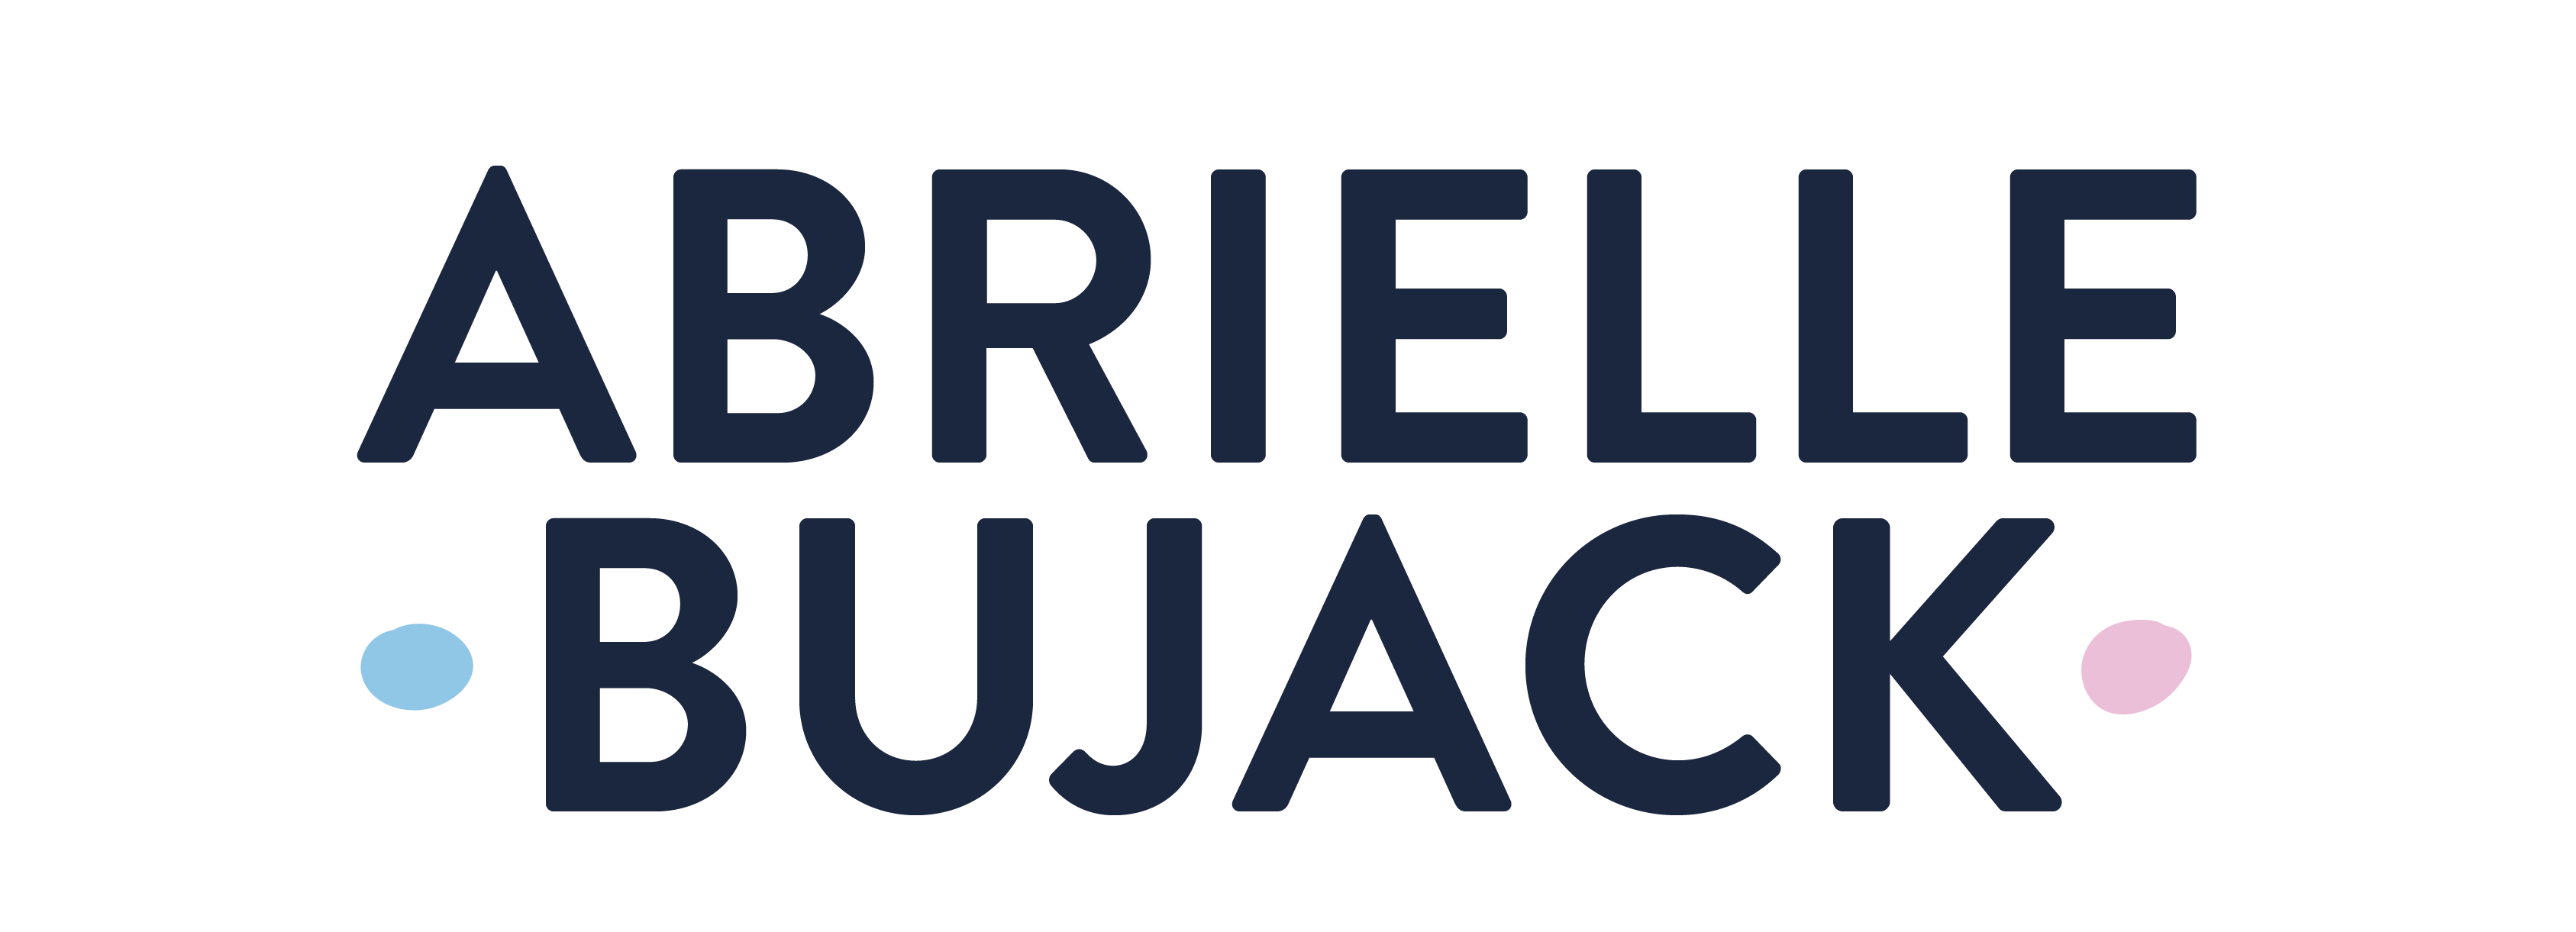 Abrielle Bujack